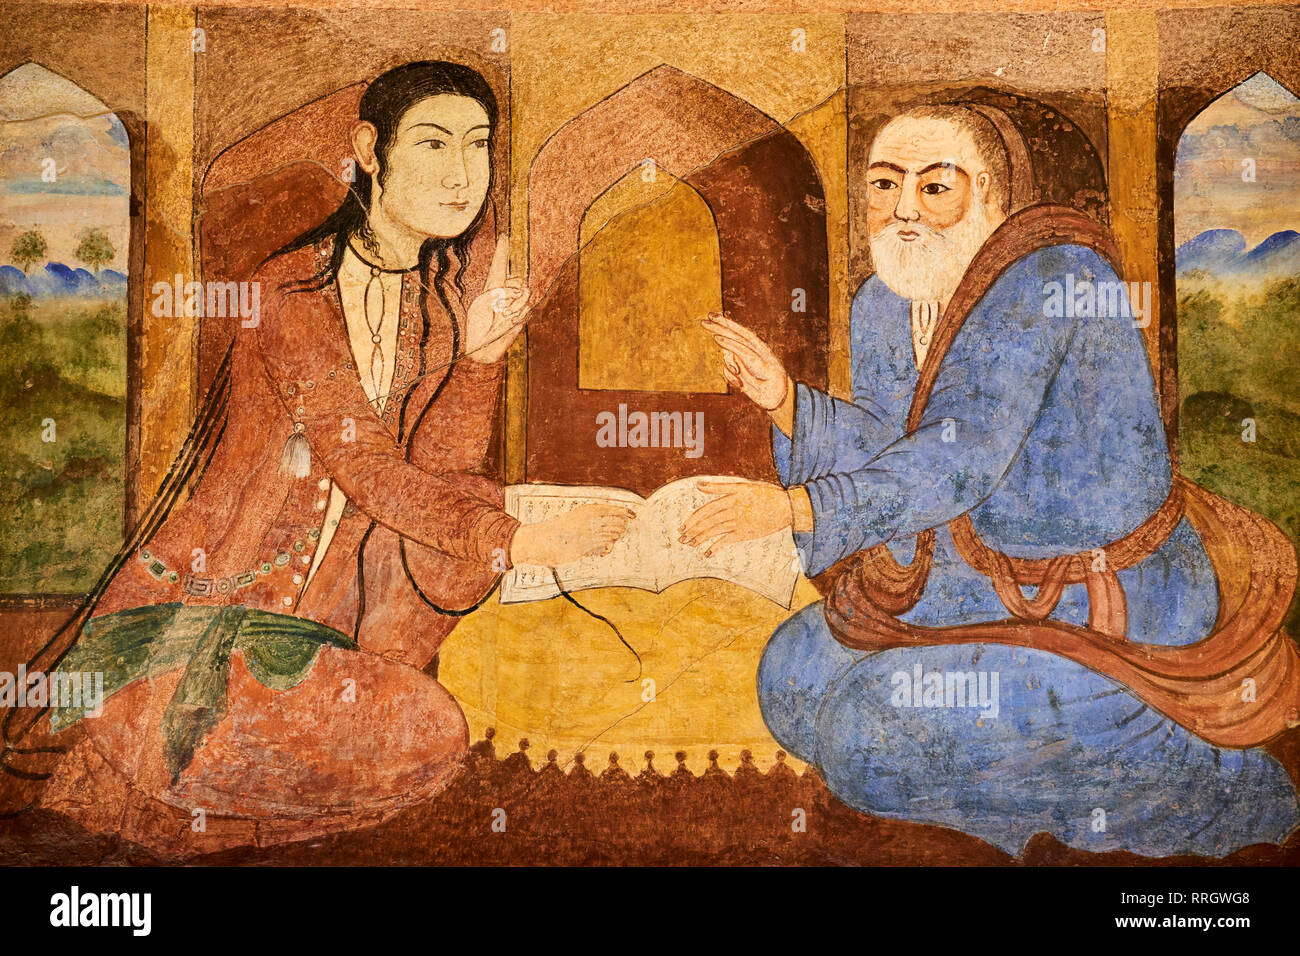 Époque safavide Chehel Sotun peinture, Palace, Isfahan, Iran, Moyen-Orient Banque D'Images